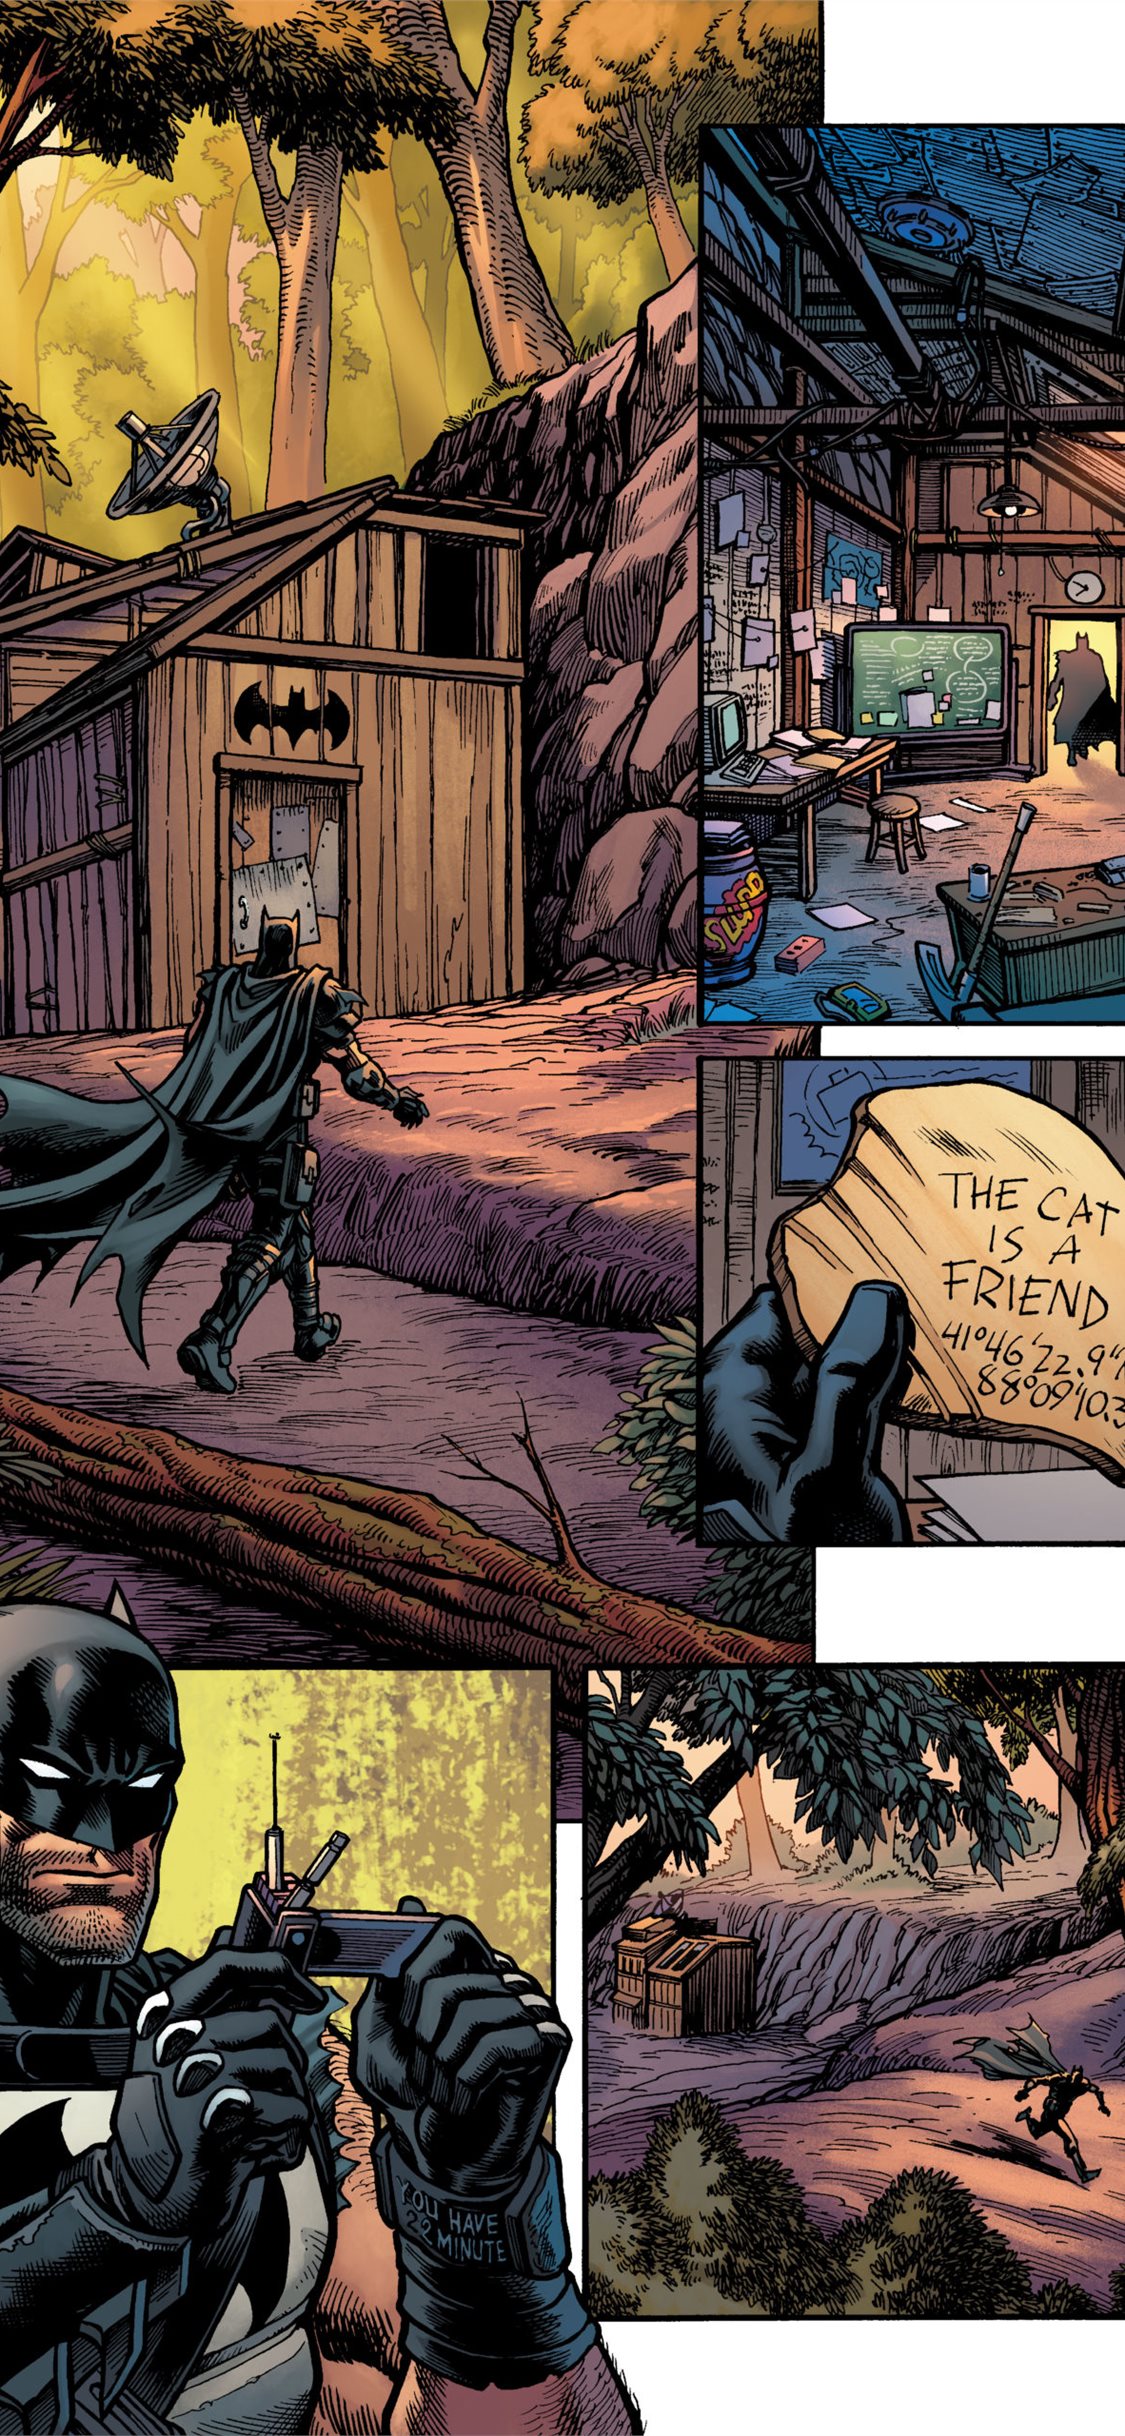 Batman Comic Book Outfit Fortnite Wallpapers